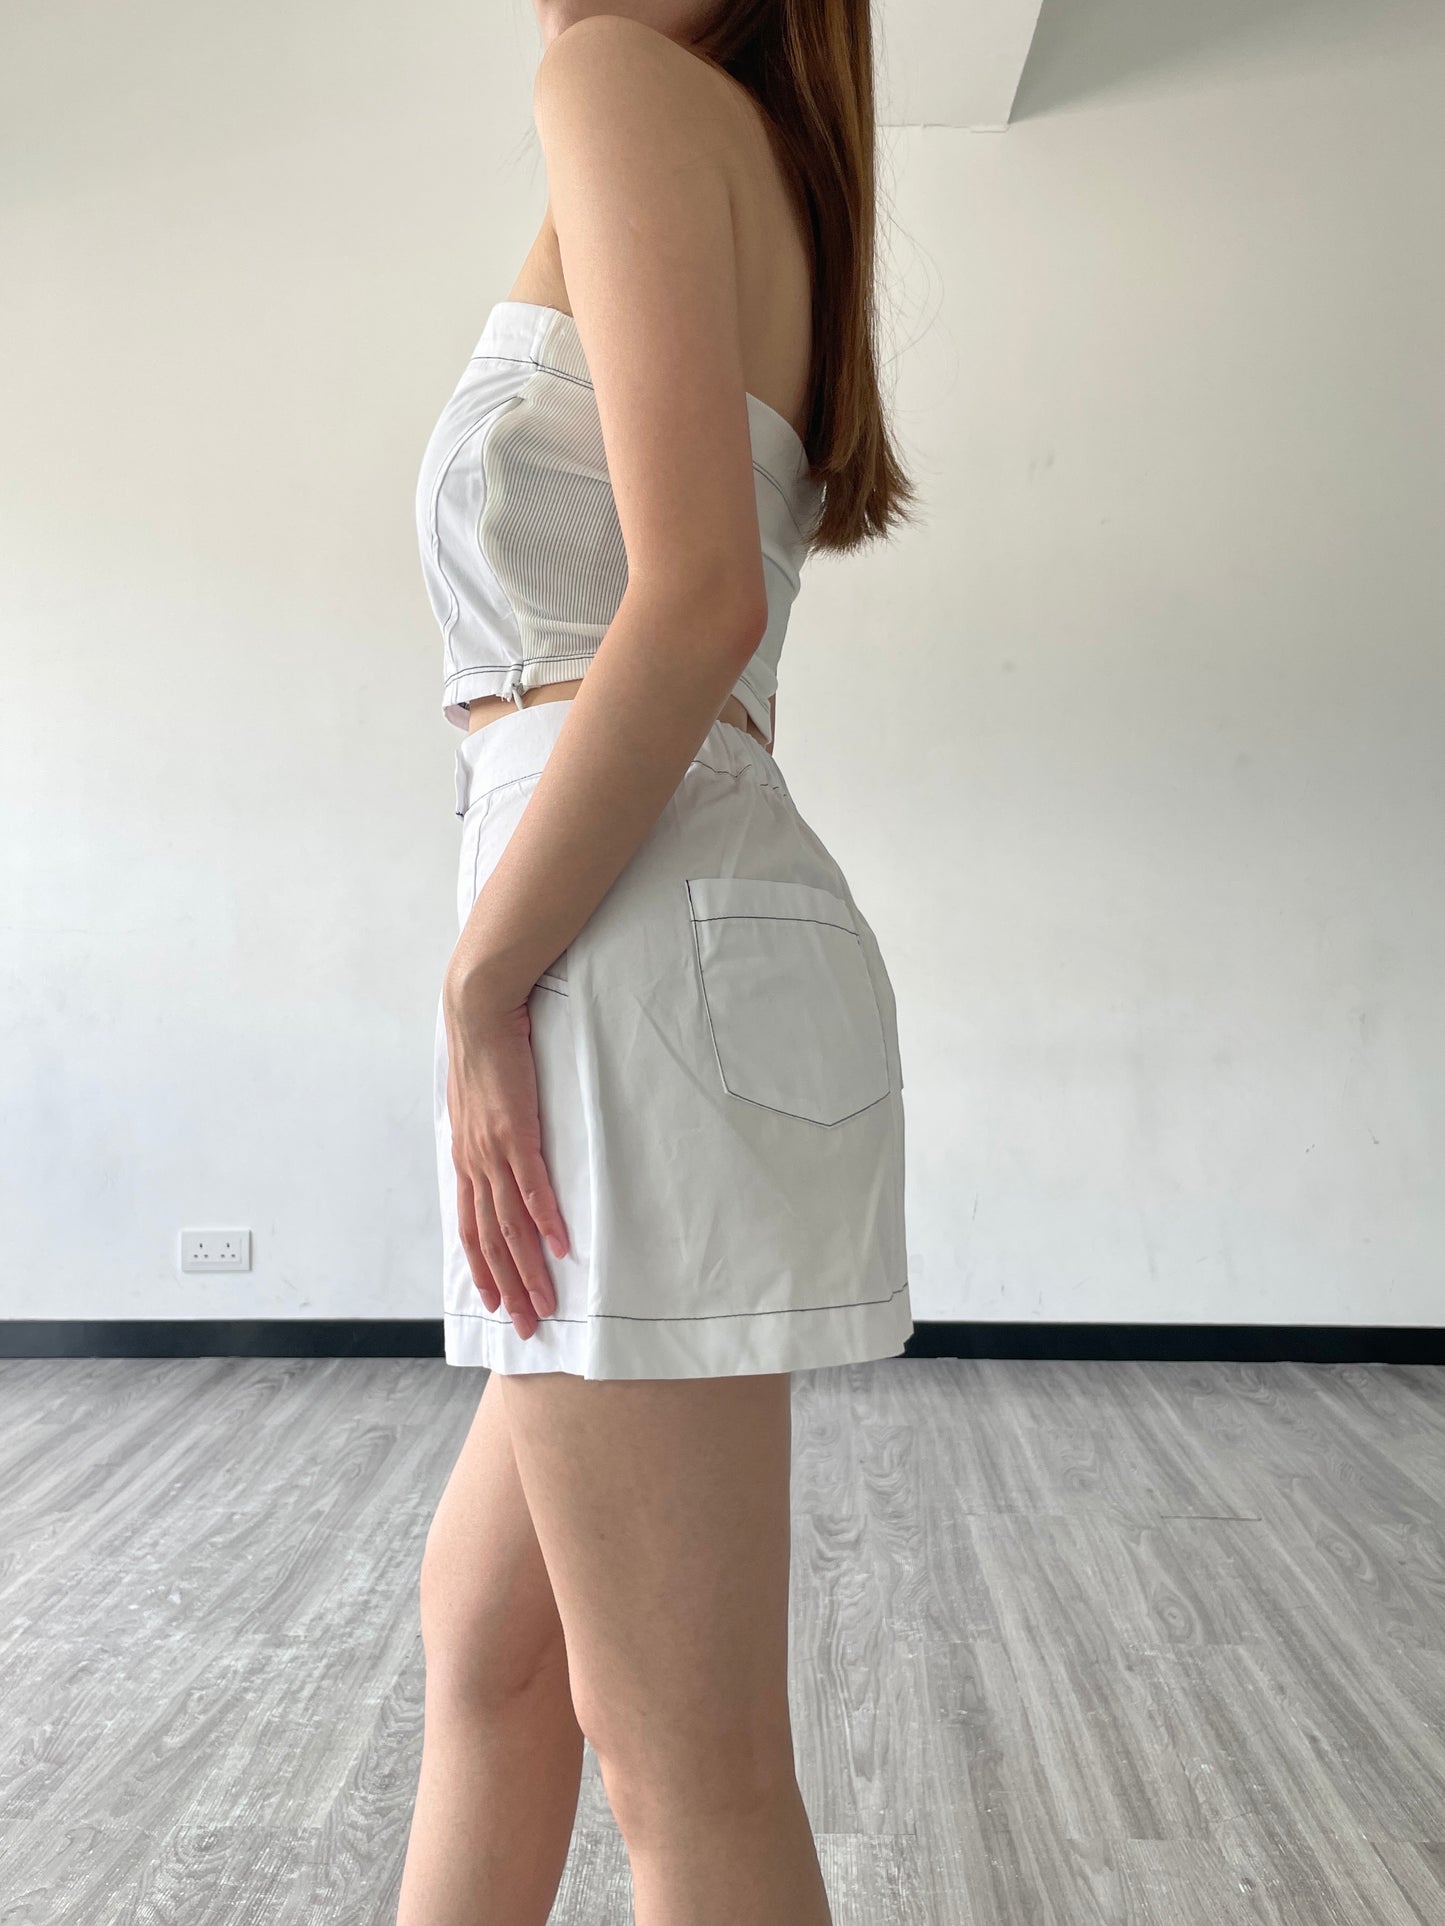 More Skirt